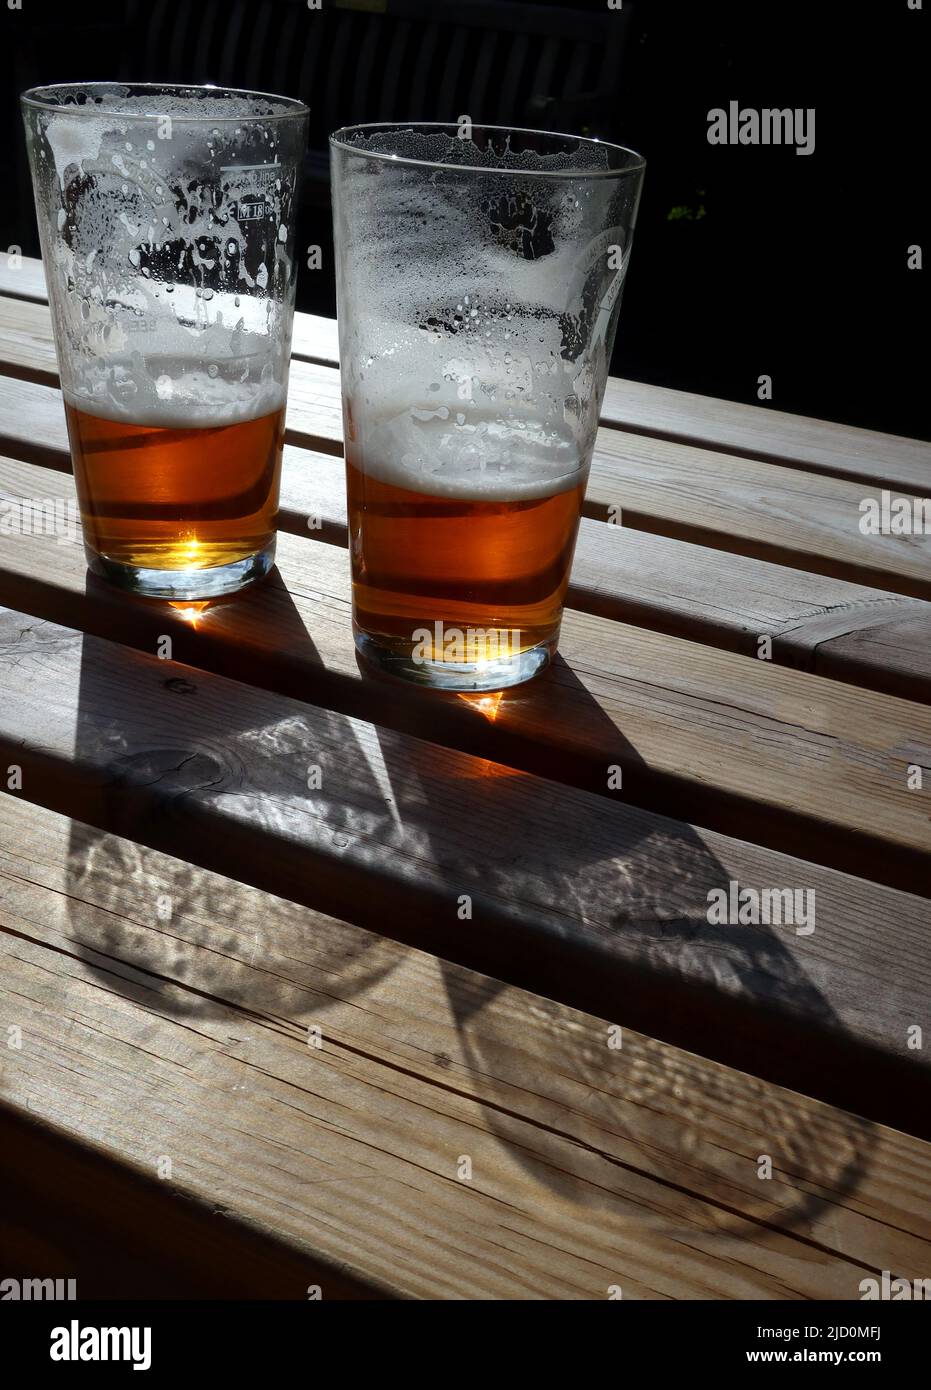 Glas Half Full - 2 Pint Topfgläser mit echtem Ale, die einen Abendschatten über einem Biergartentisch werfen, Cheshire, England, Großbritannien Stockfoto